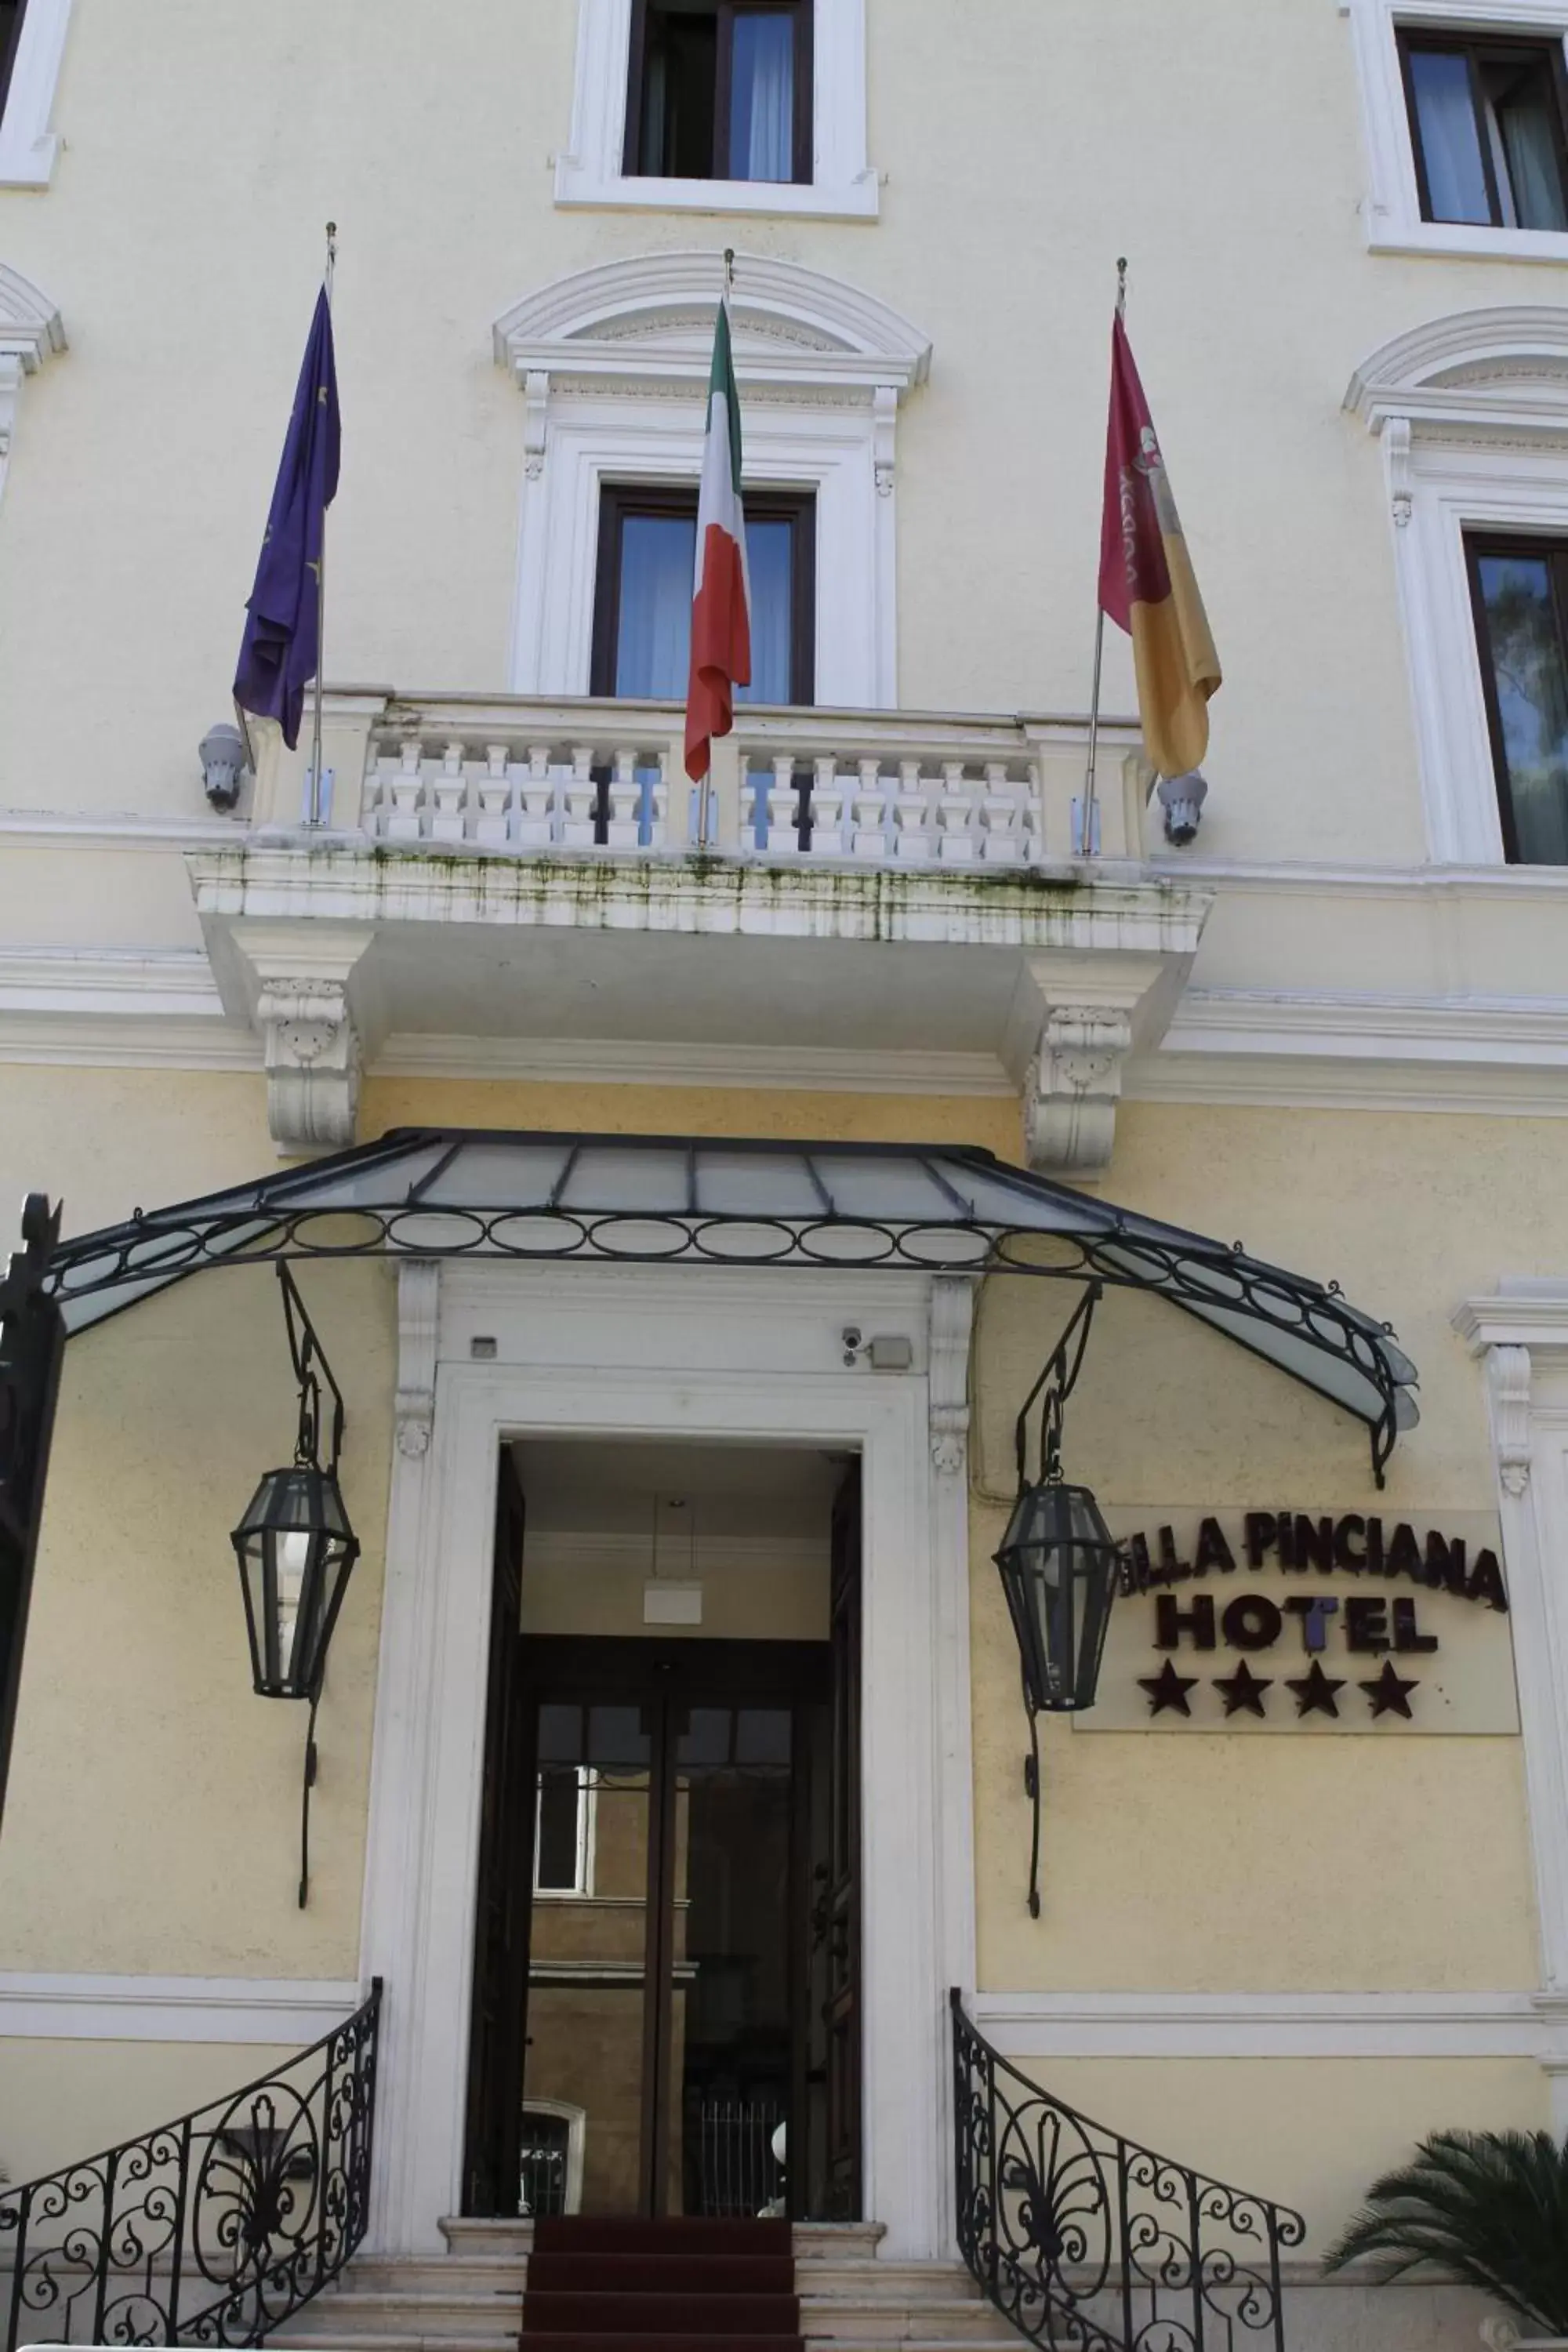 Facade/entrance in Hotel Villa Pinciana